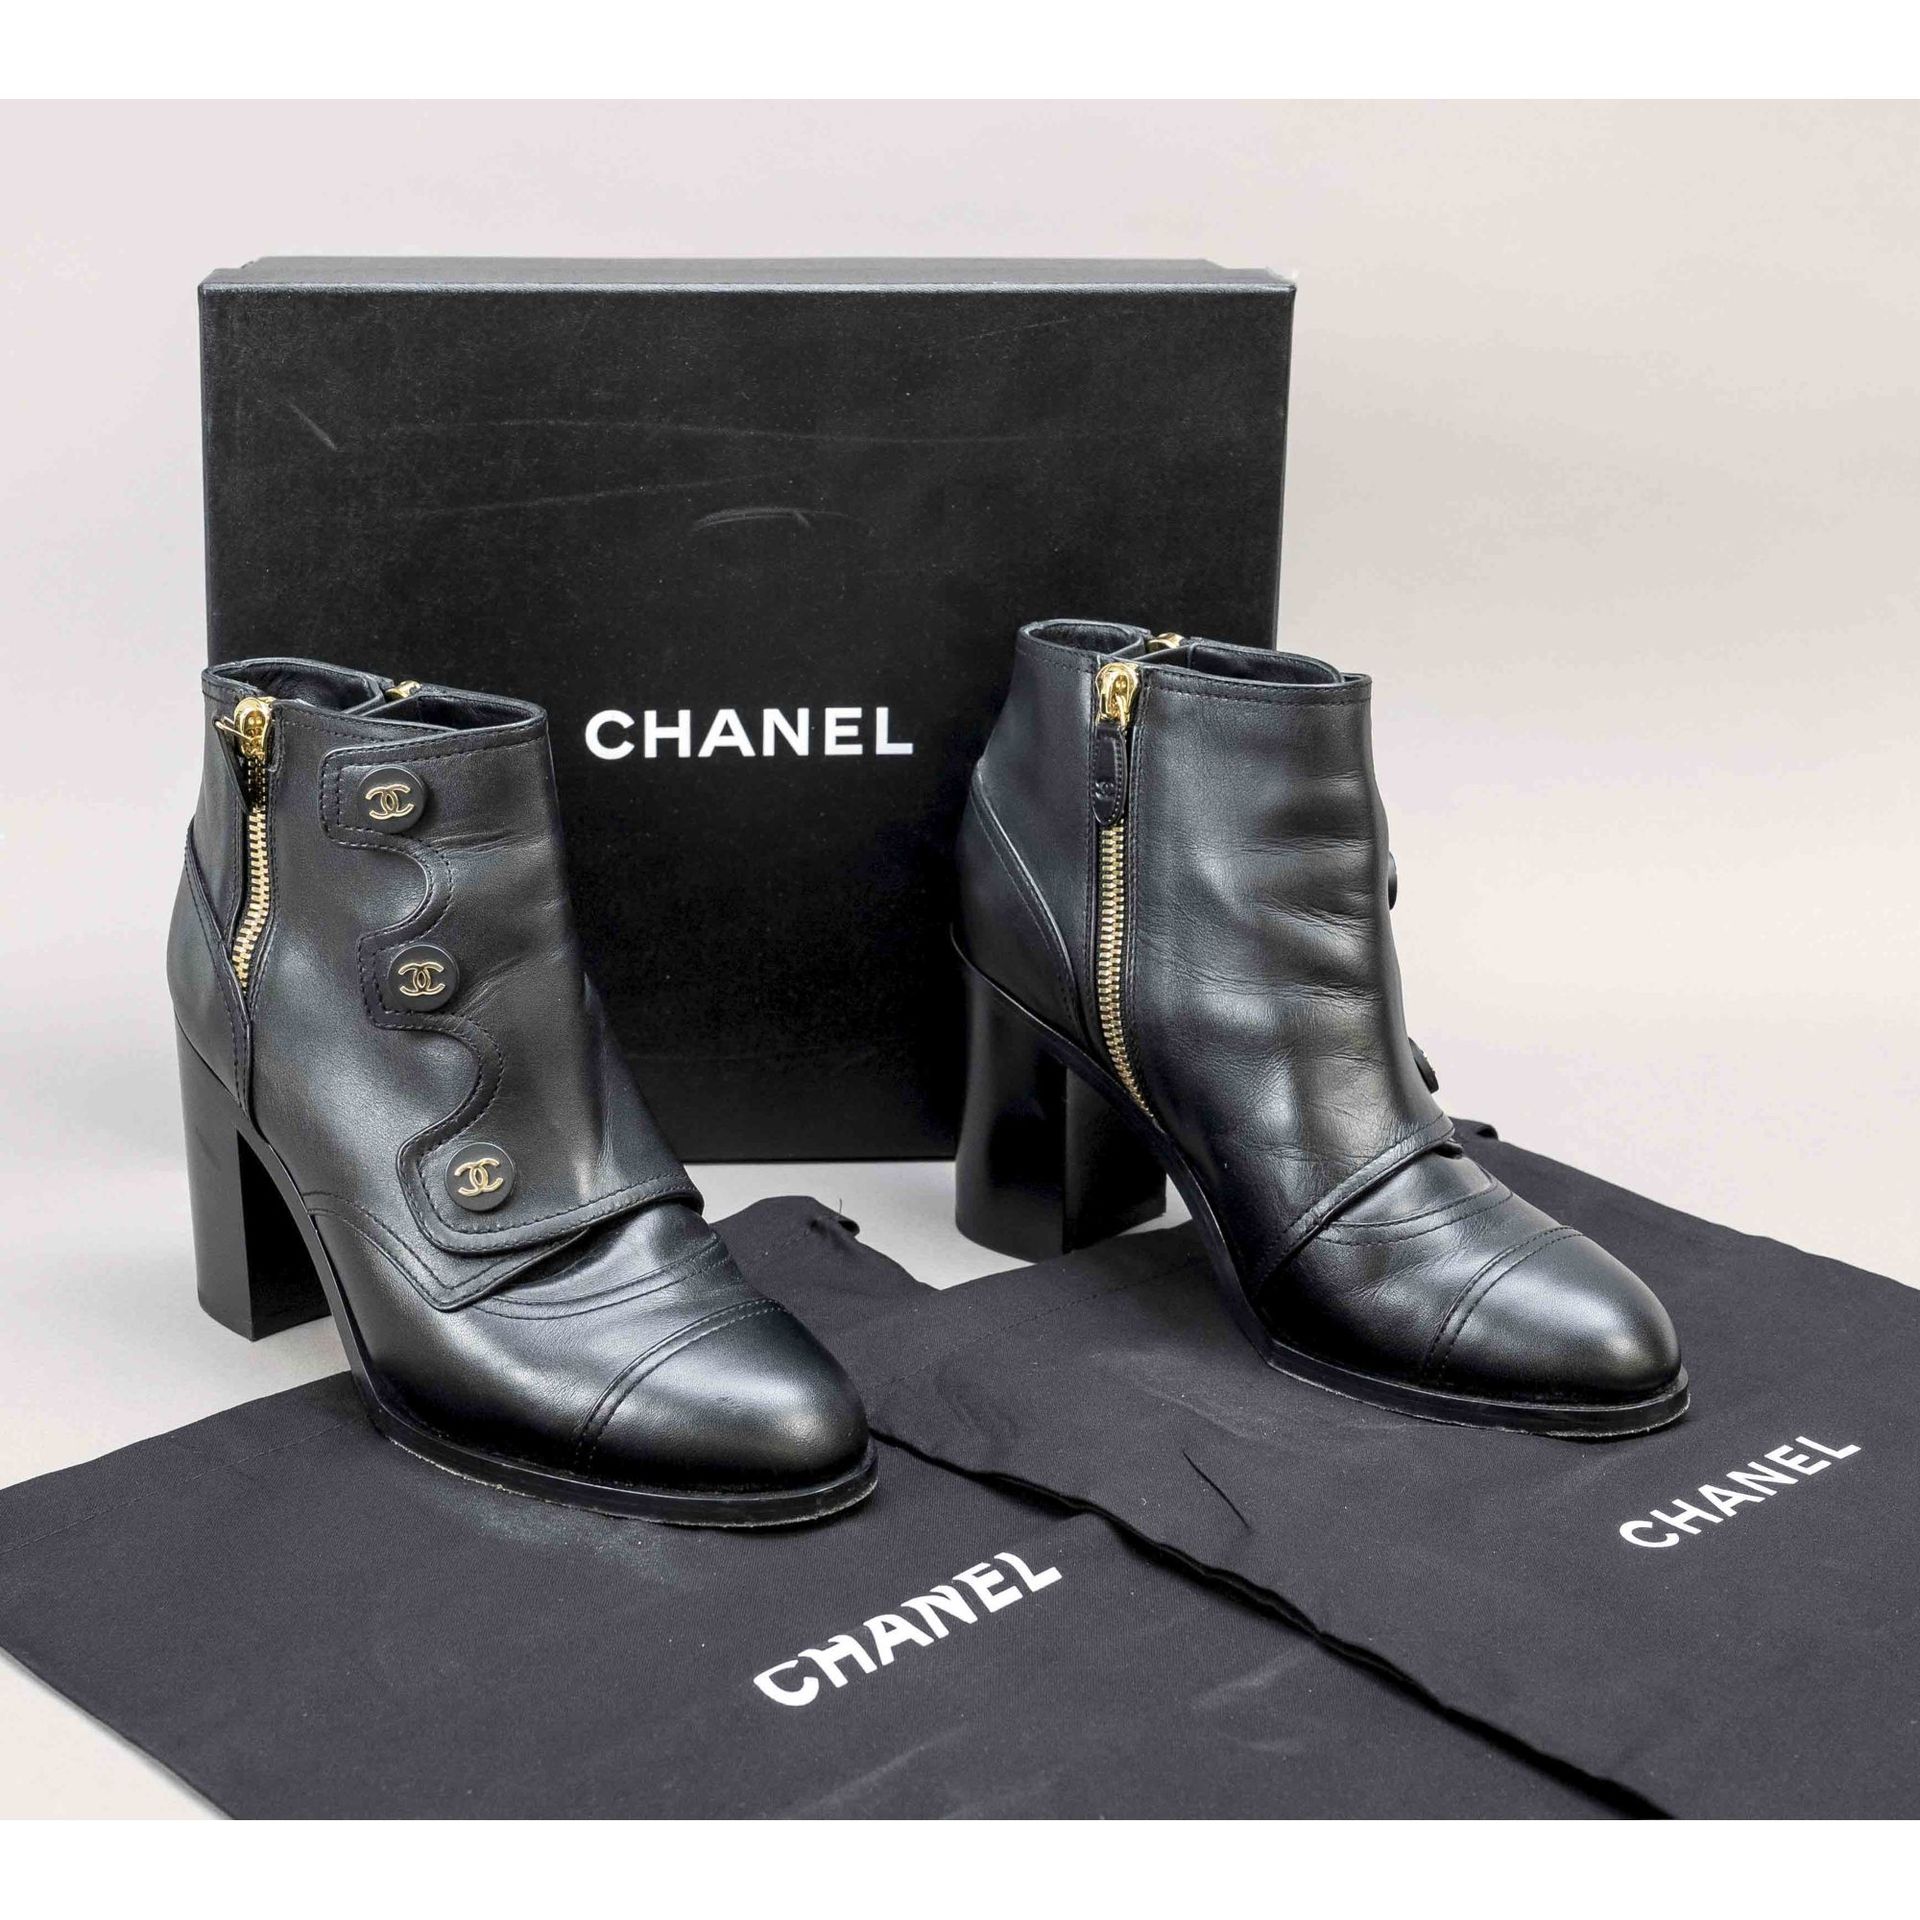 香奈儿（Chanel），女士踝靴，宽跟，黑色光滑皮质，侧面拉链，正面带